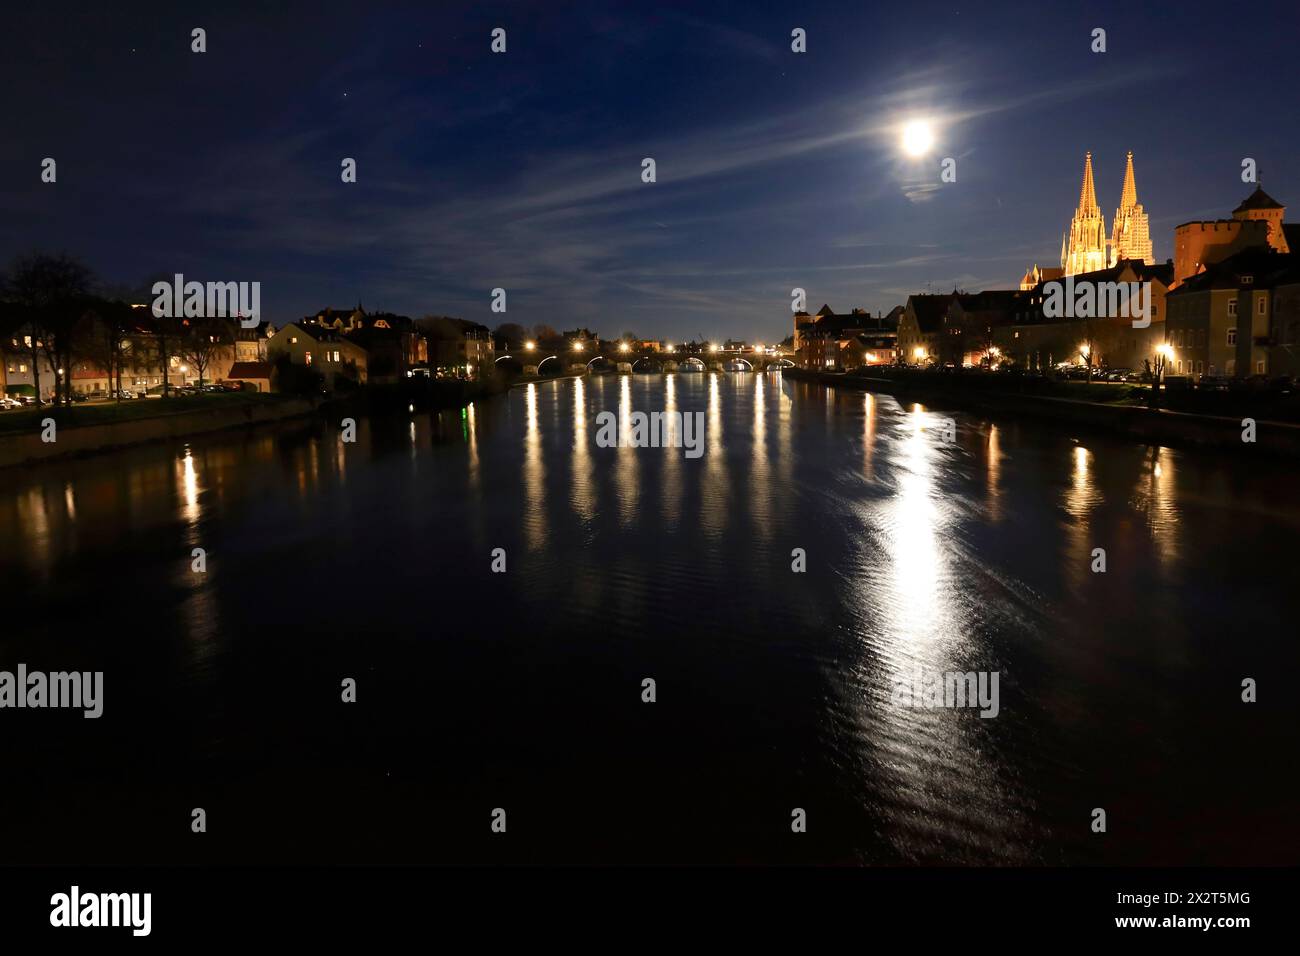 Allemagne, Bavière, Ratisbonne, rivière qui traverse la vieille ville historique la nuit Banque D'Images